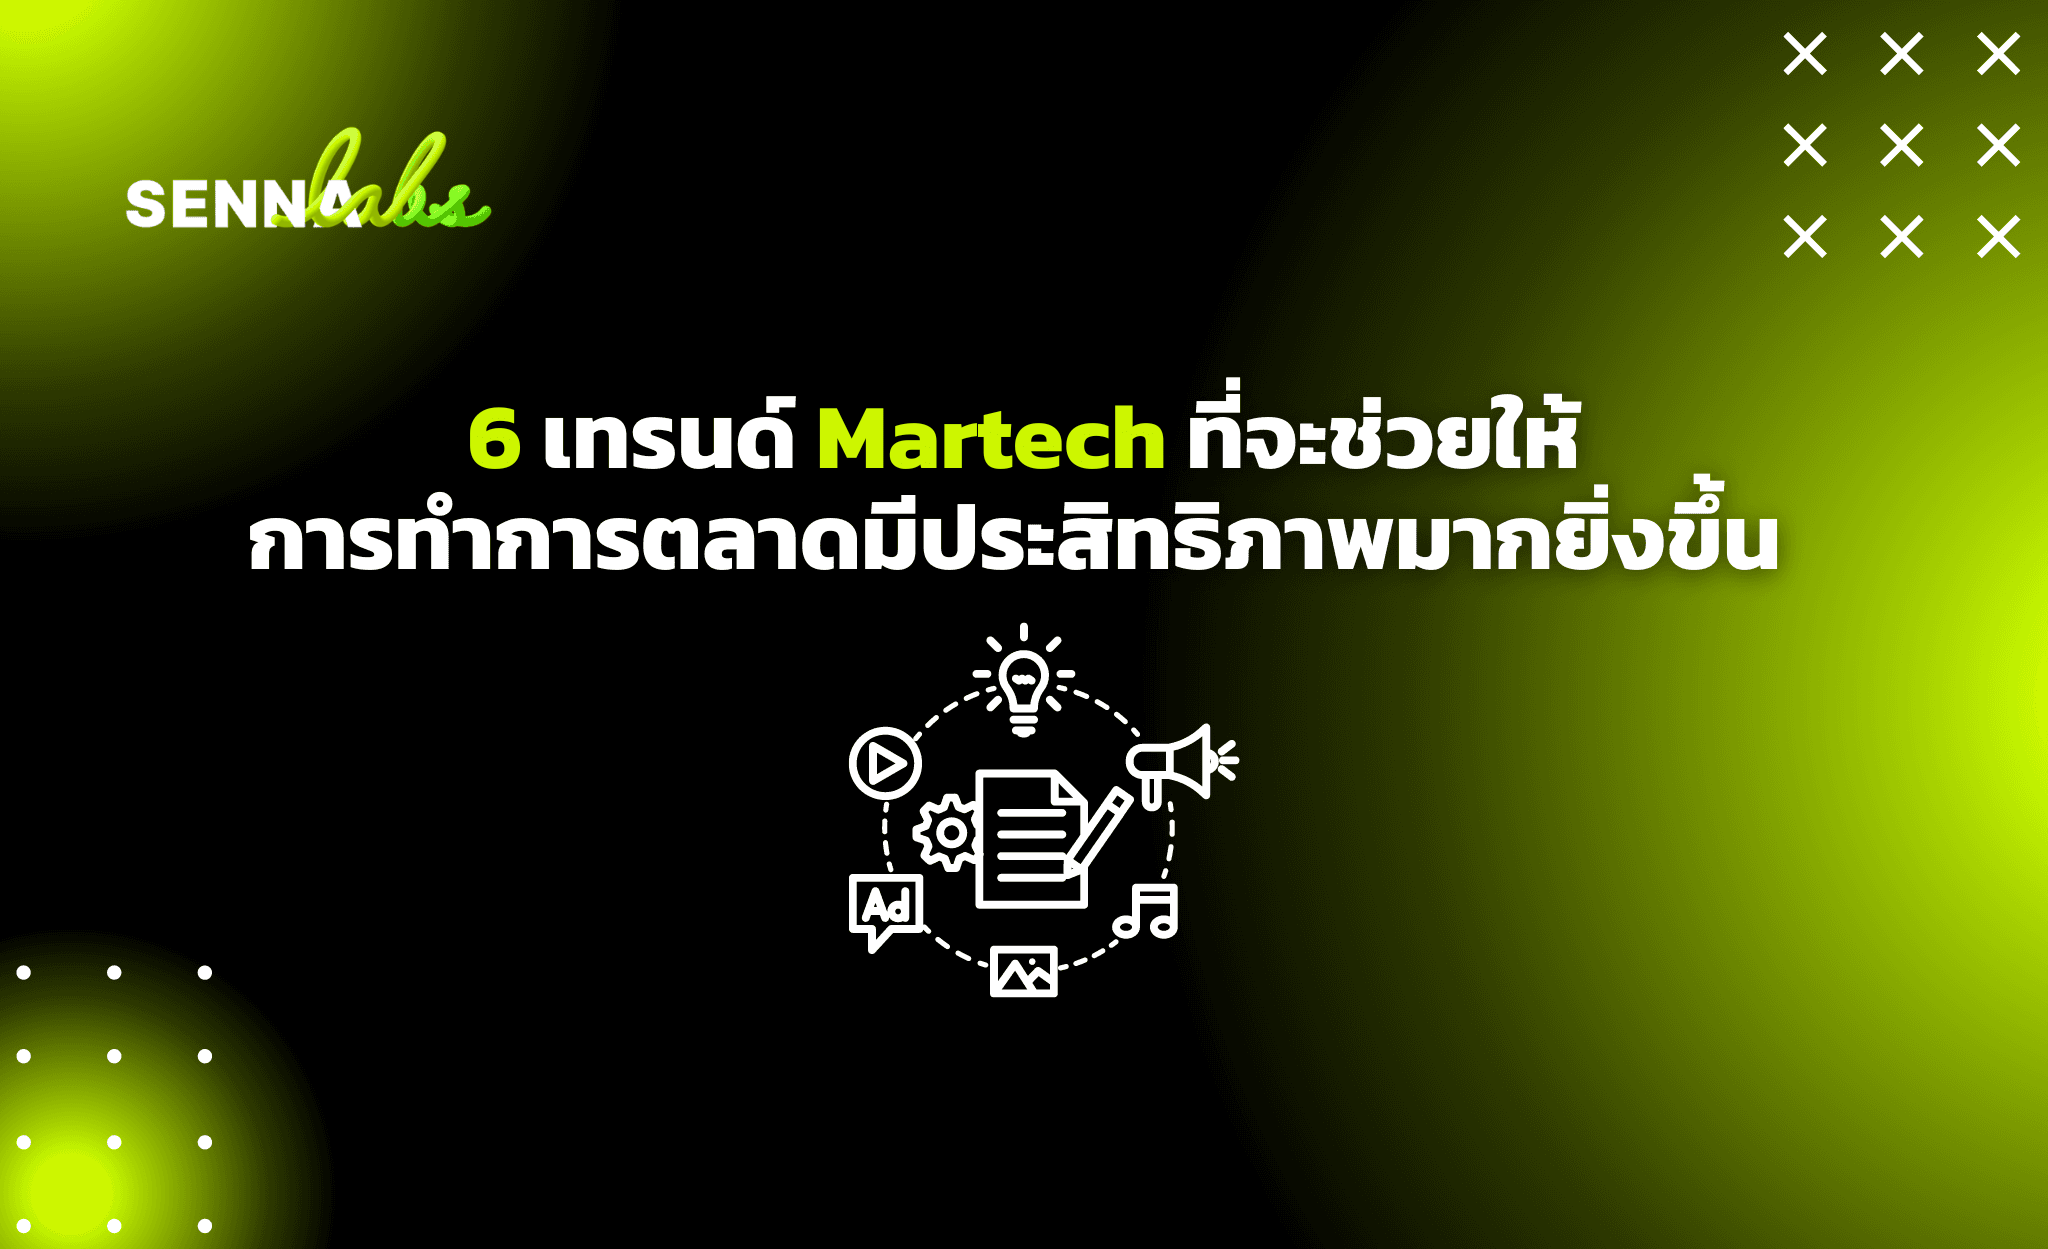 6 เทรนด์ Martech ที่จะช่วยให้การทำการตลาดมีประสิทธิภาพมากยิ่งขึ้น